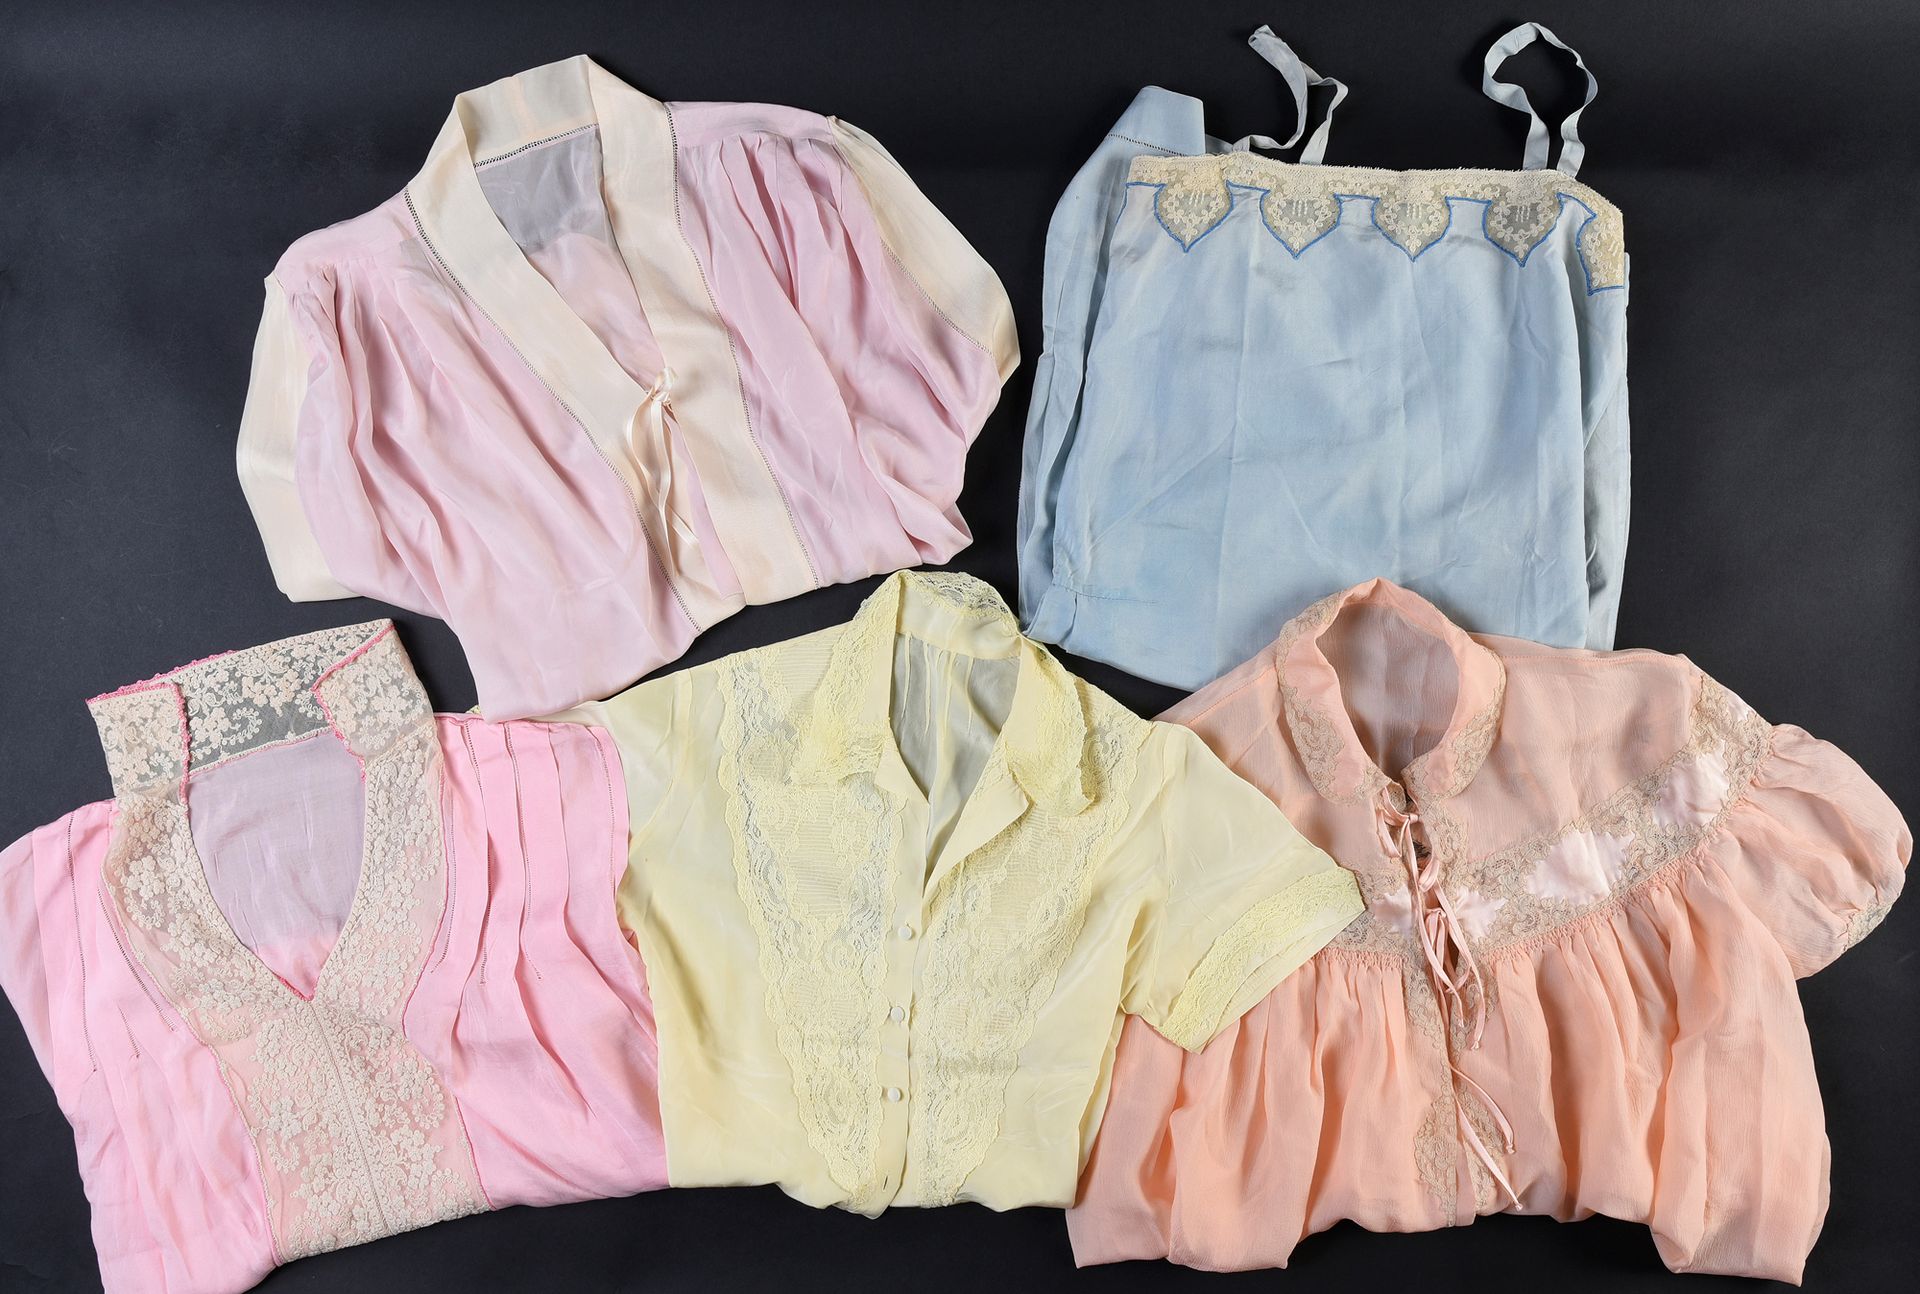 Null 妇女的丝绸和蕾丝服装，大约在1930-40年。
五件完全由手工缝制的丝绸和蕾丝，一件粉红色的丝绸夏装，领口有加莱蕾丝，一件粉红色的丝绸海绵和奶油色的内&hellip;